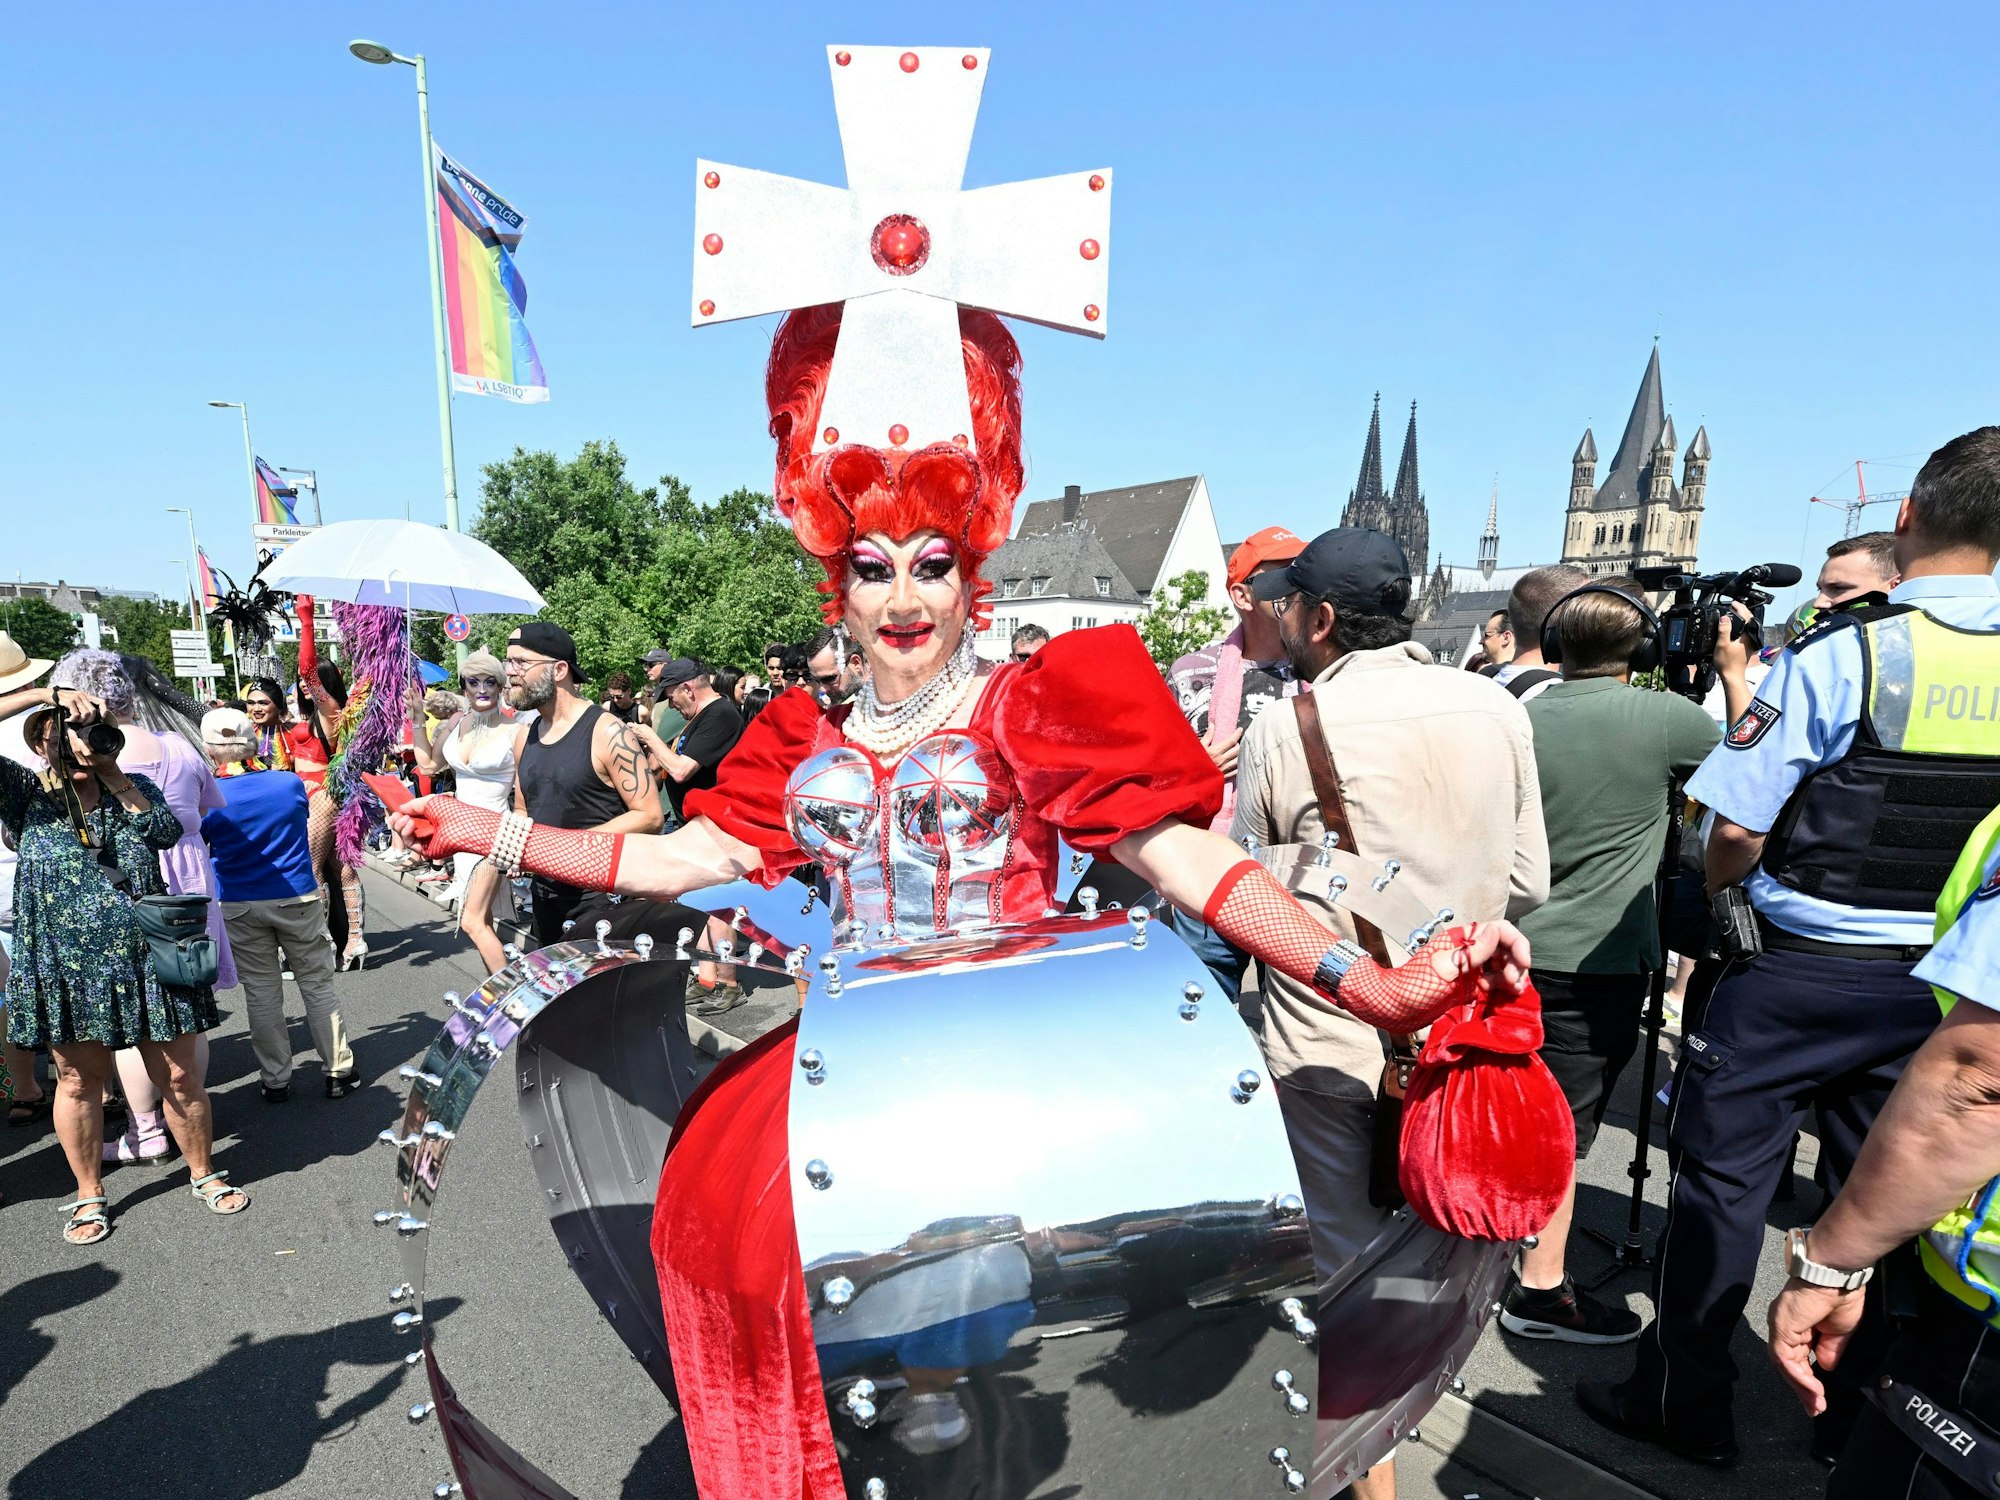 ColognePride ist nach Berlin die zweitgrößte CSD-Parade in Deutschland. Sie trägt als Kleid eine Krone.